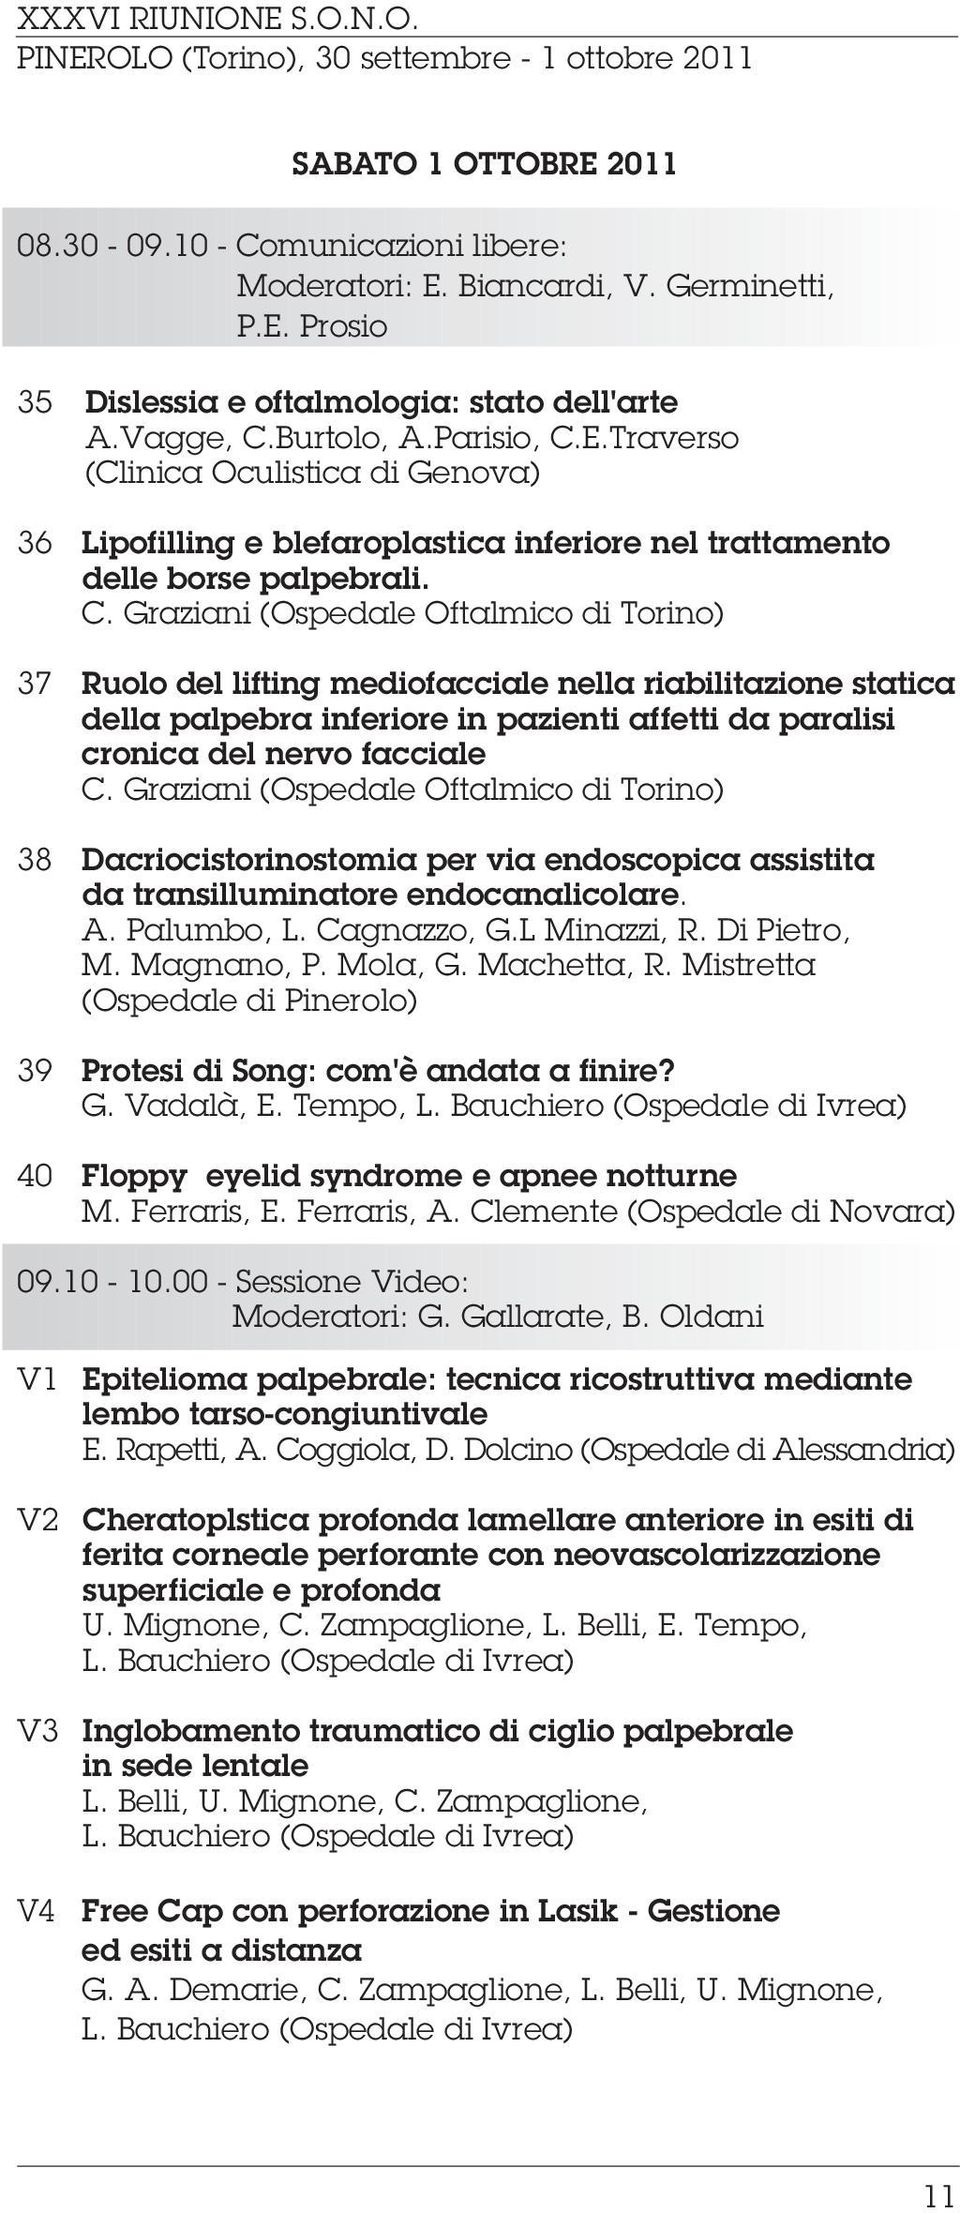 Graziani (Ospedale Oftalmico di Torino) 38 Dacriocistorinostomia per via endoscopica assistita da transilluminatore endocanalicolare. A. Palumbo, L. Cagnazzo, G.L Minazzi, R. Di Pietro, M. Magnano, P.